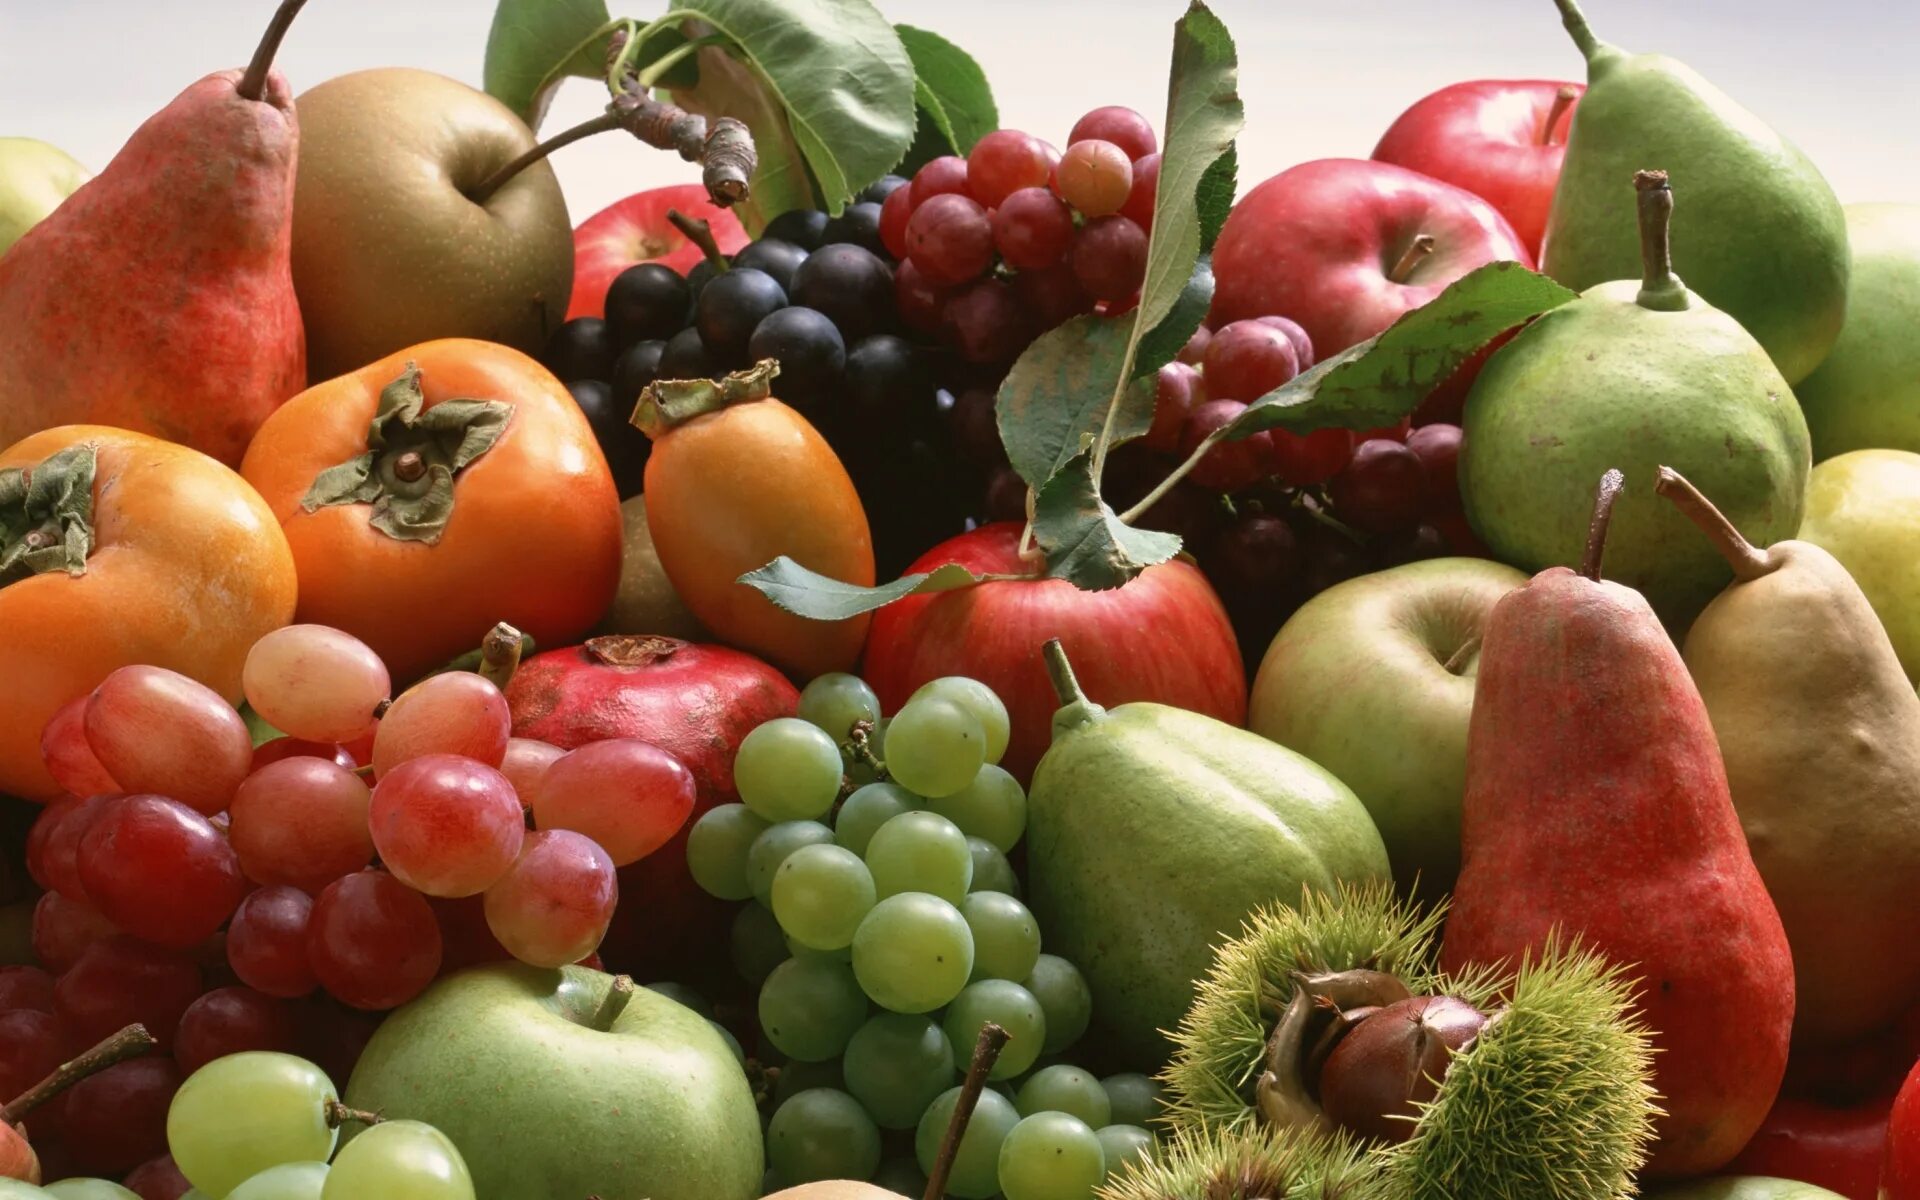 Яблоко фрукт или овощ. Фрукты. Овощи, фрукты, ягоды. Урожай фруктов. Осенние овощи и фрукты.